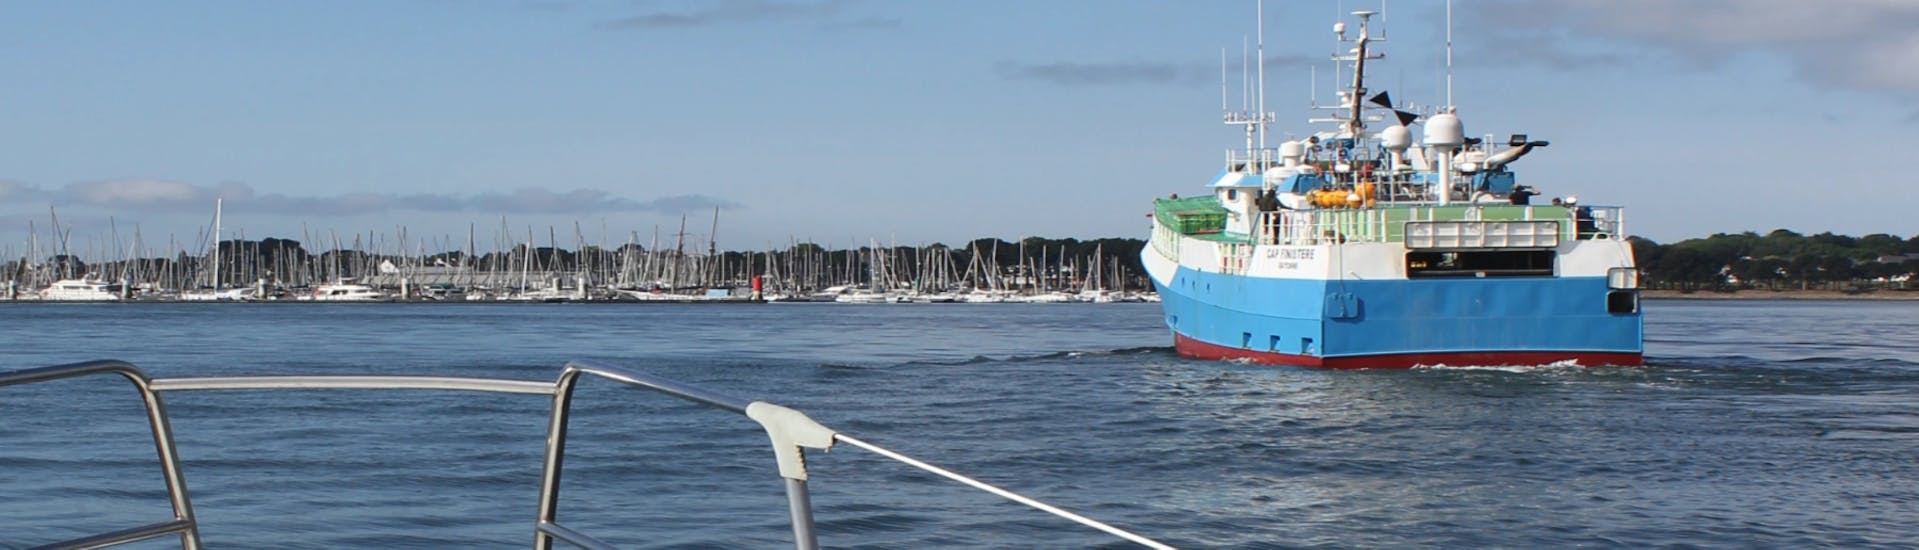 Een foto die de voorkant van de KeyLargo-boot laat zien tijdens de privéboottocht rond de Rade de Lorient.